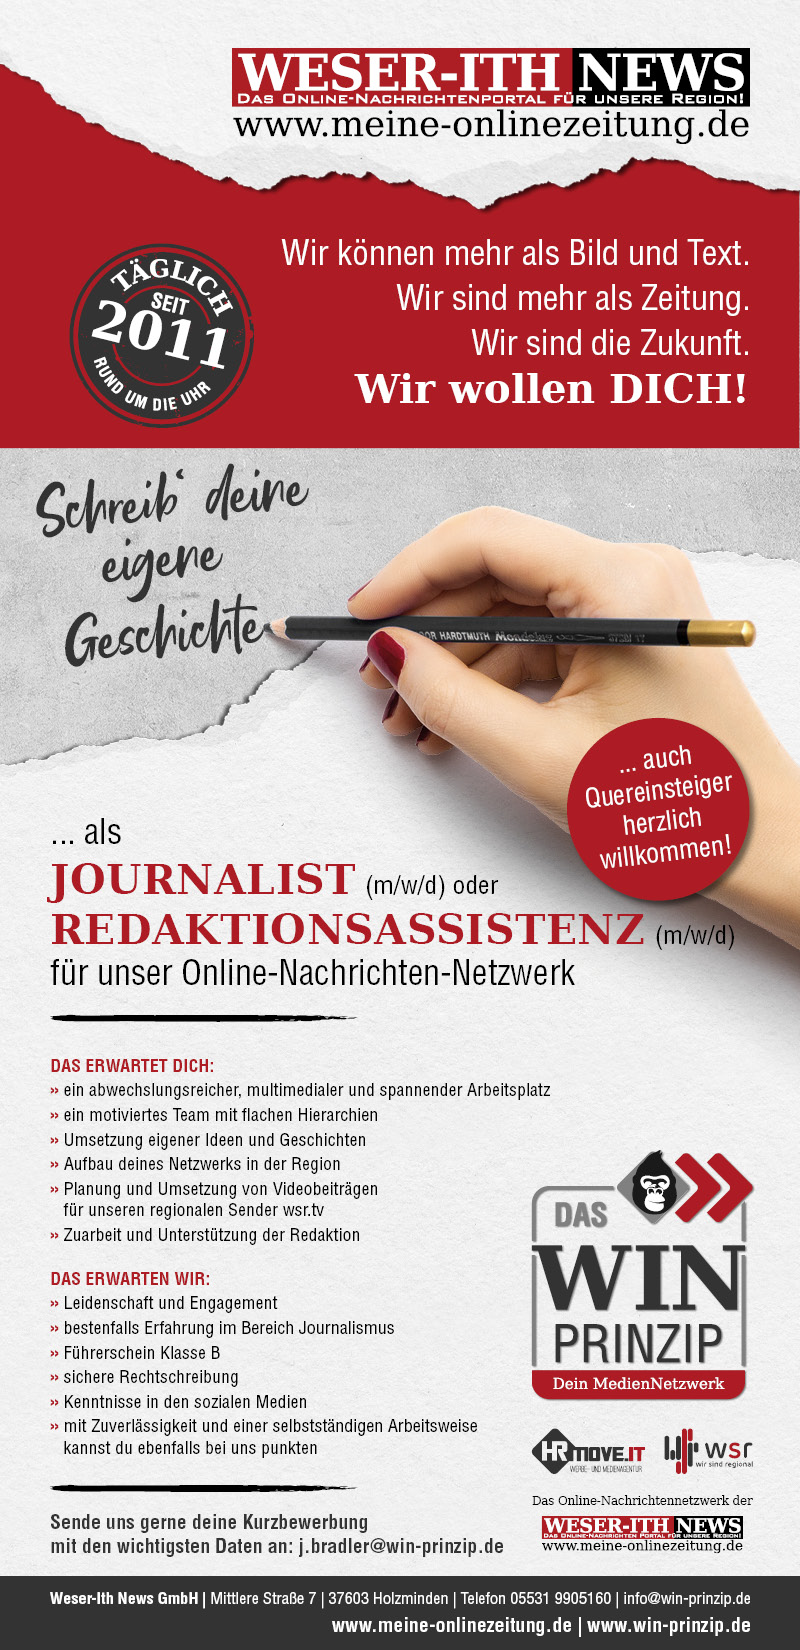 Journalist oder Redaktionsassistenz (m/w/d) - Weser-Ith News GmbH